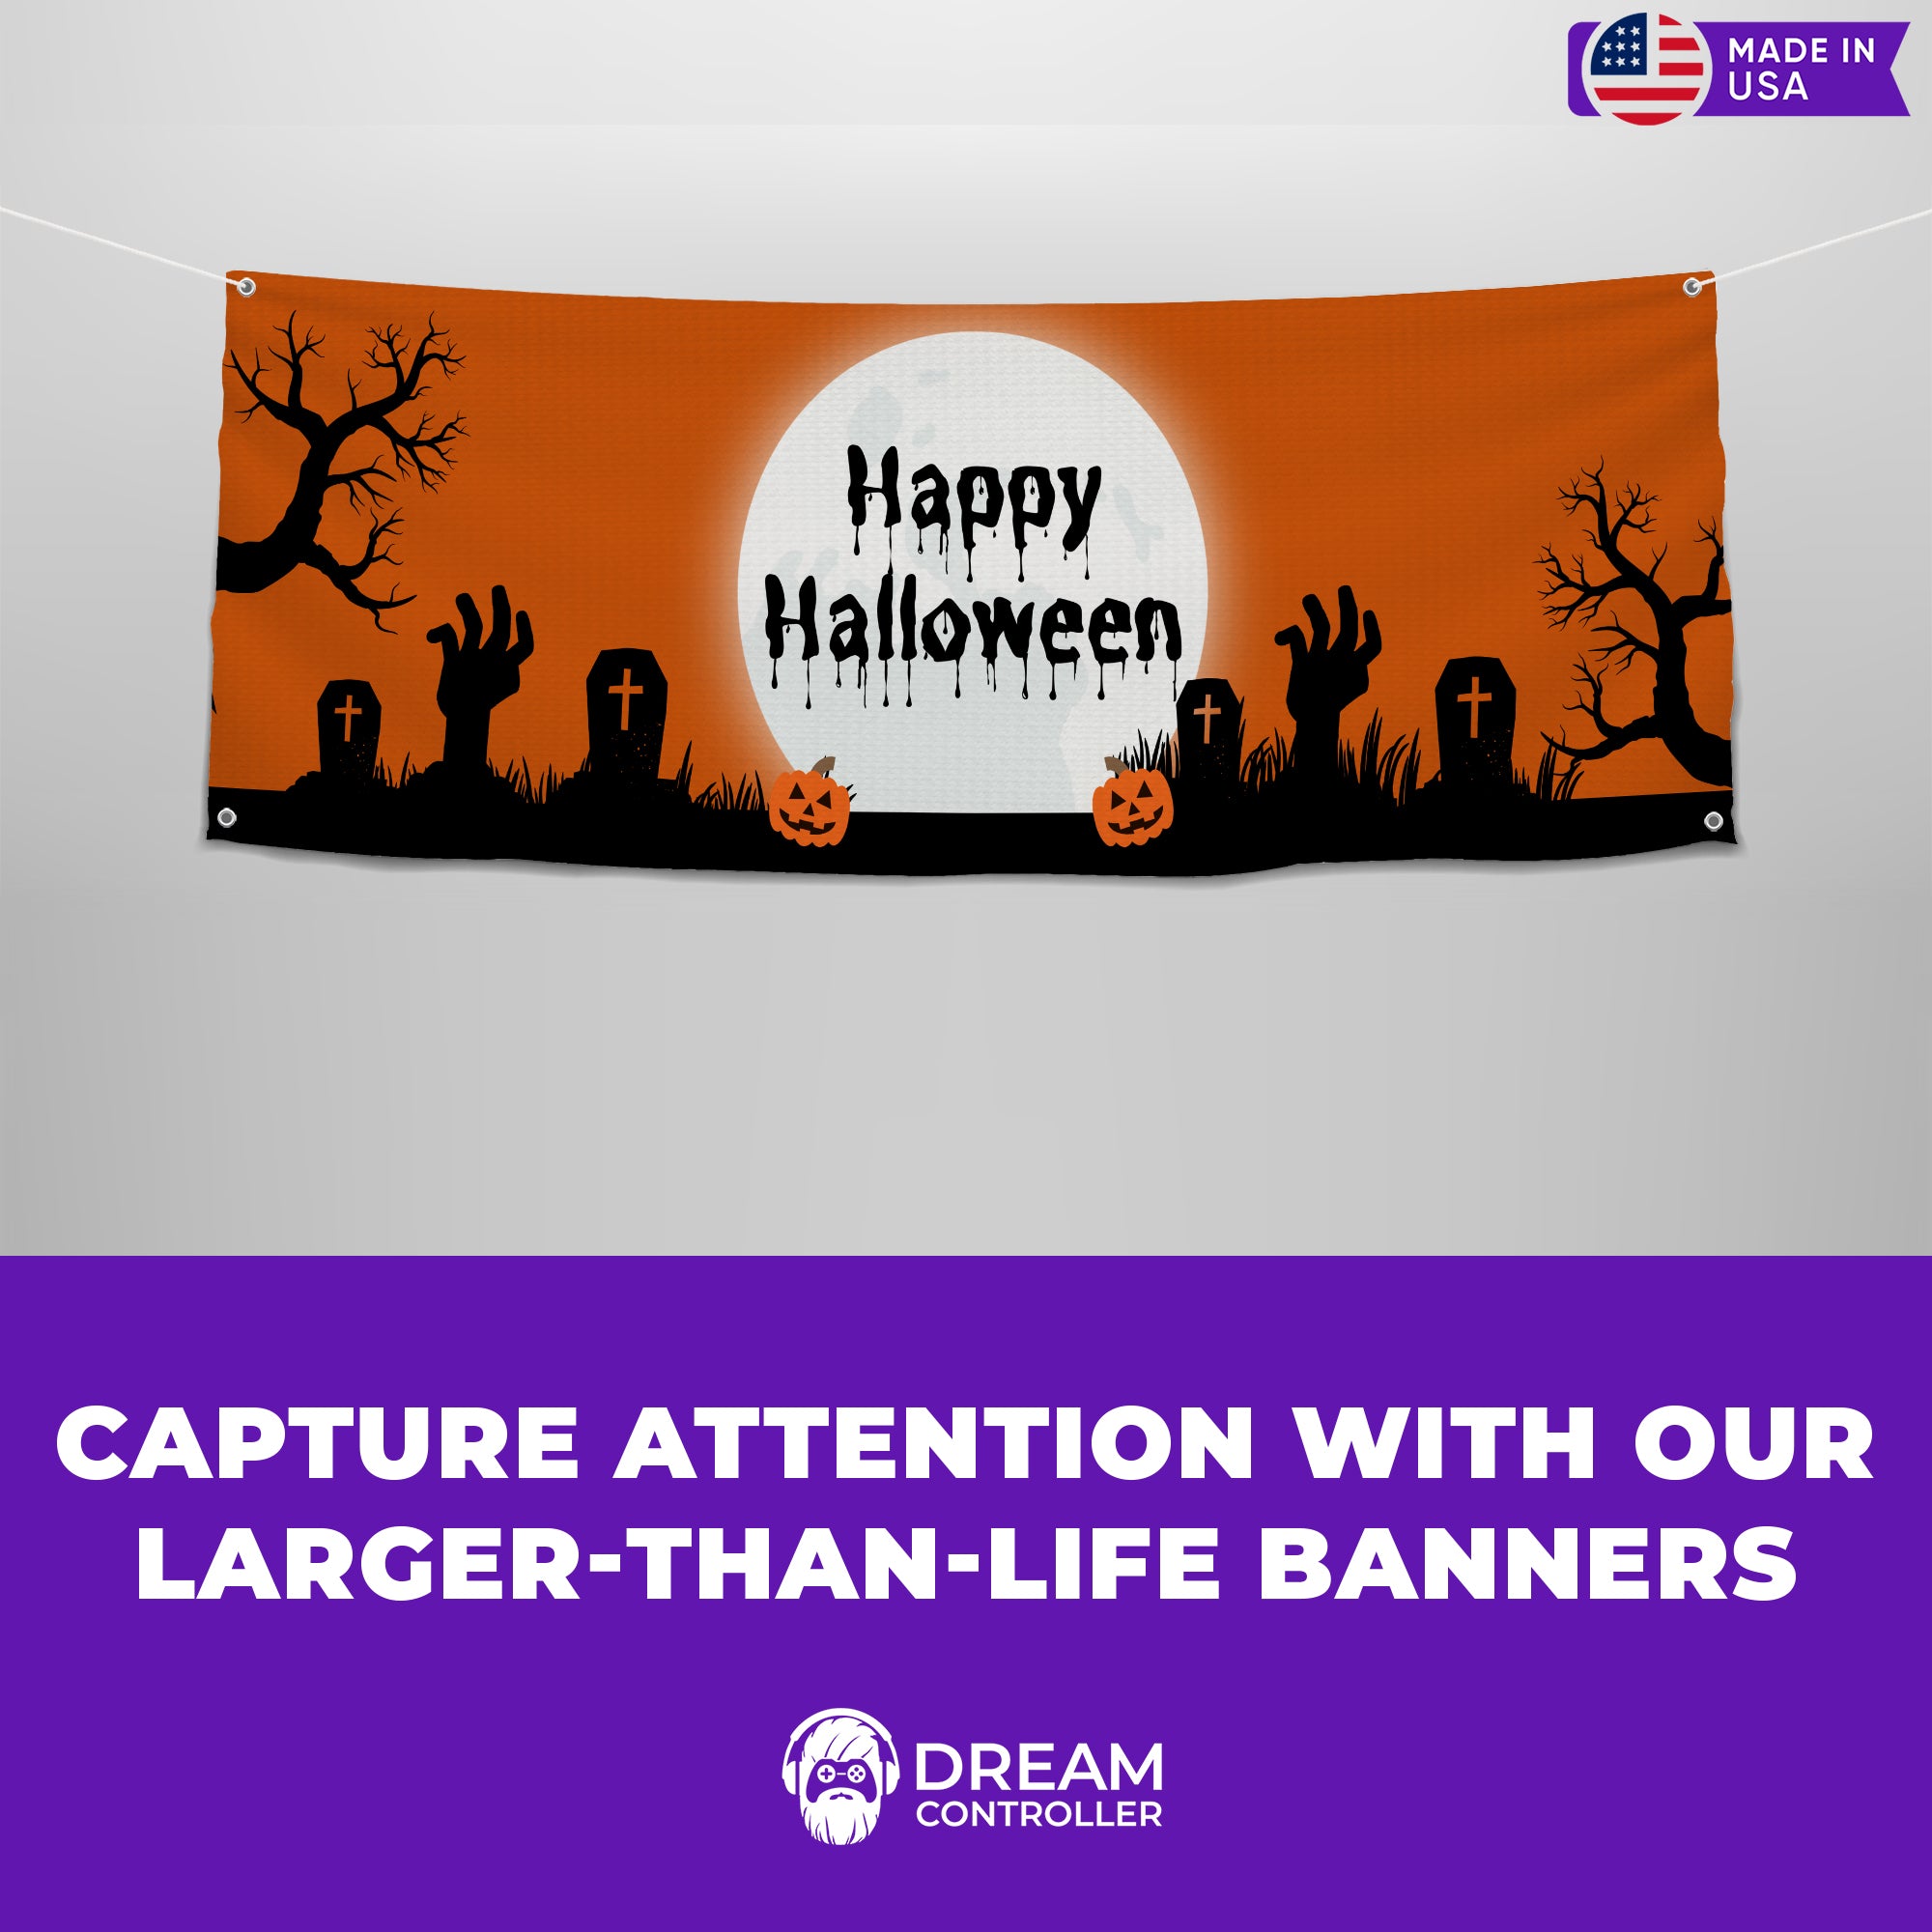 Happy Halloween Banner - Eerie Artwork, Weatherproof, and Creepy Design